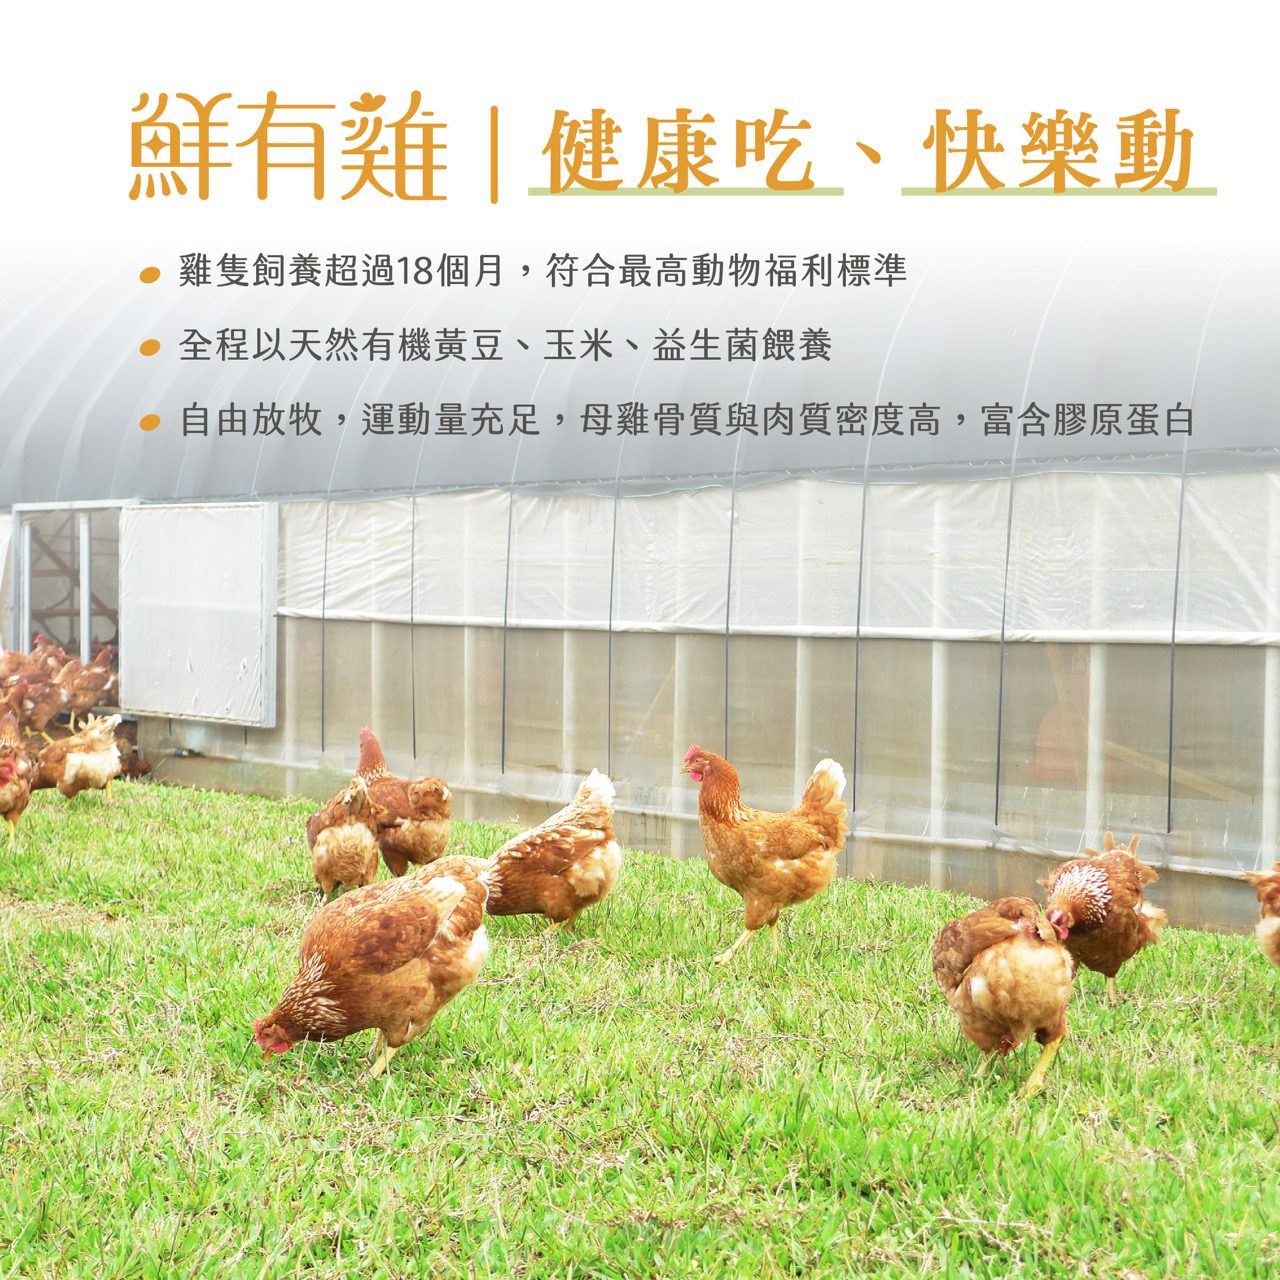 老母雞飼養超過18個月，符合最高動物福利標準。金程以天有機黃豆、玉米、益生菌餵養。自由放牧，運動量充足，母雞骨質與肉質密度高，富含膠原蛋白。